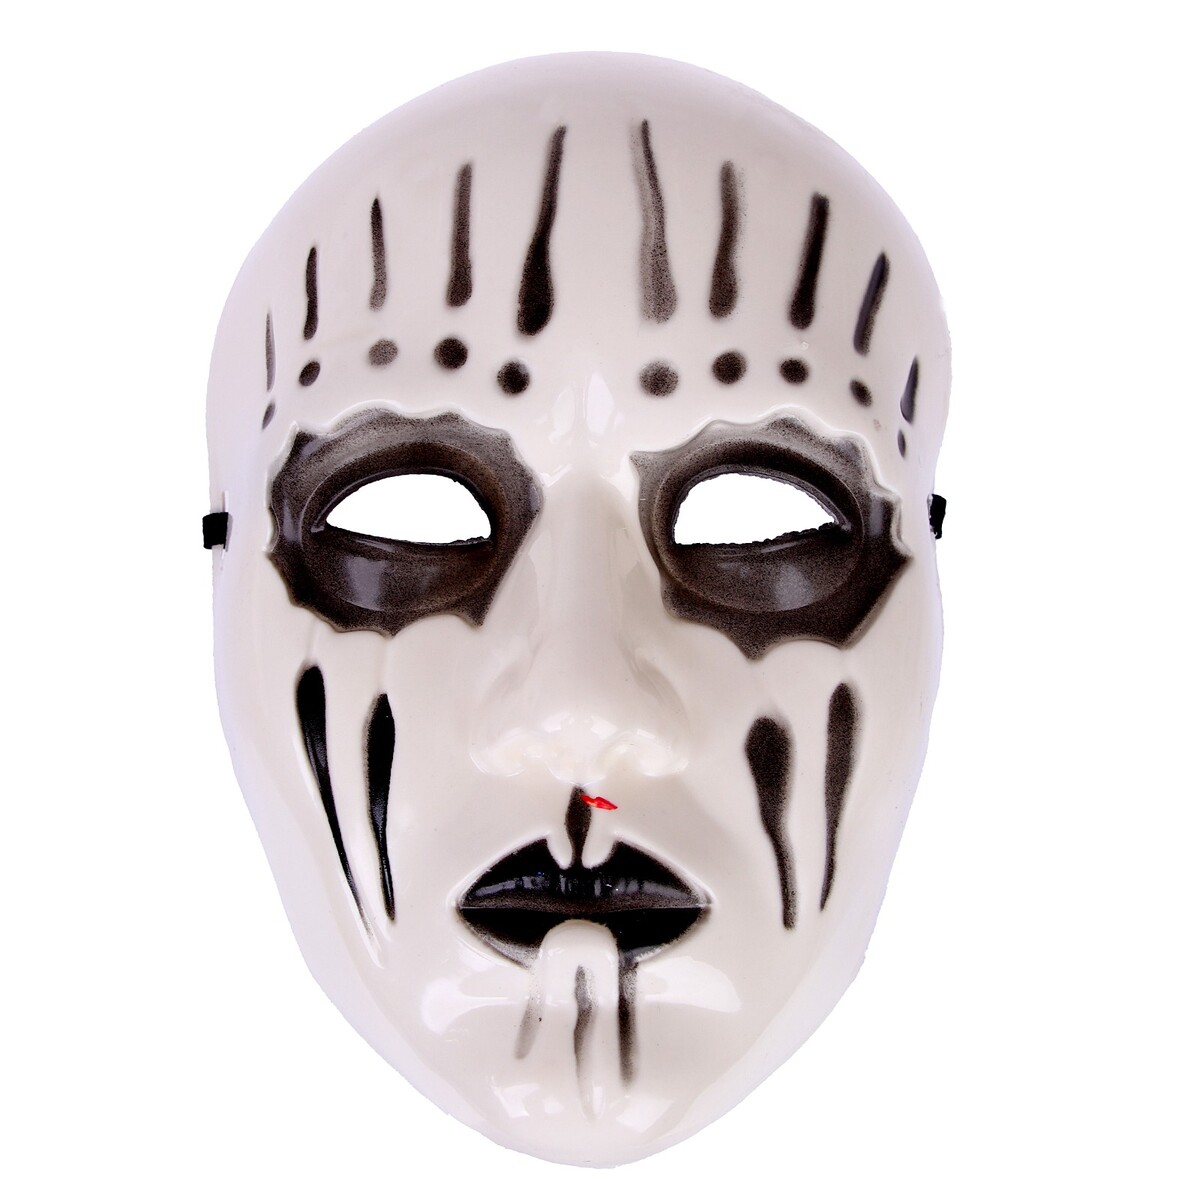 Карнавальная маска страна карнавалия карнавальная маска жук на резинке поролон